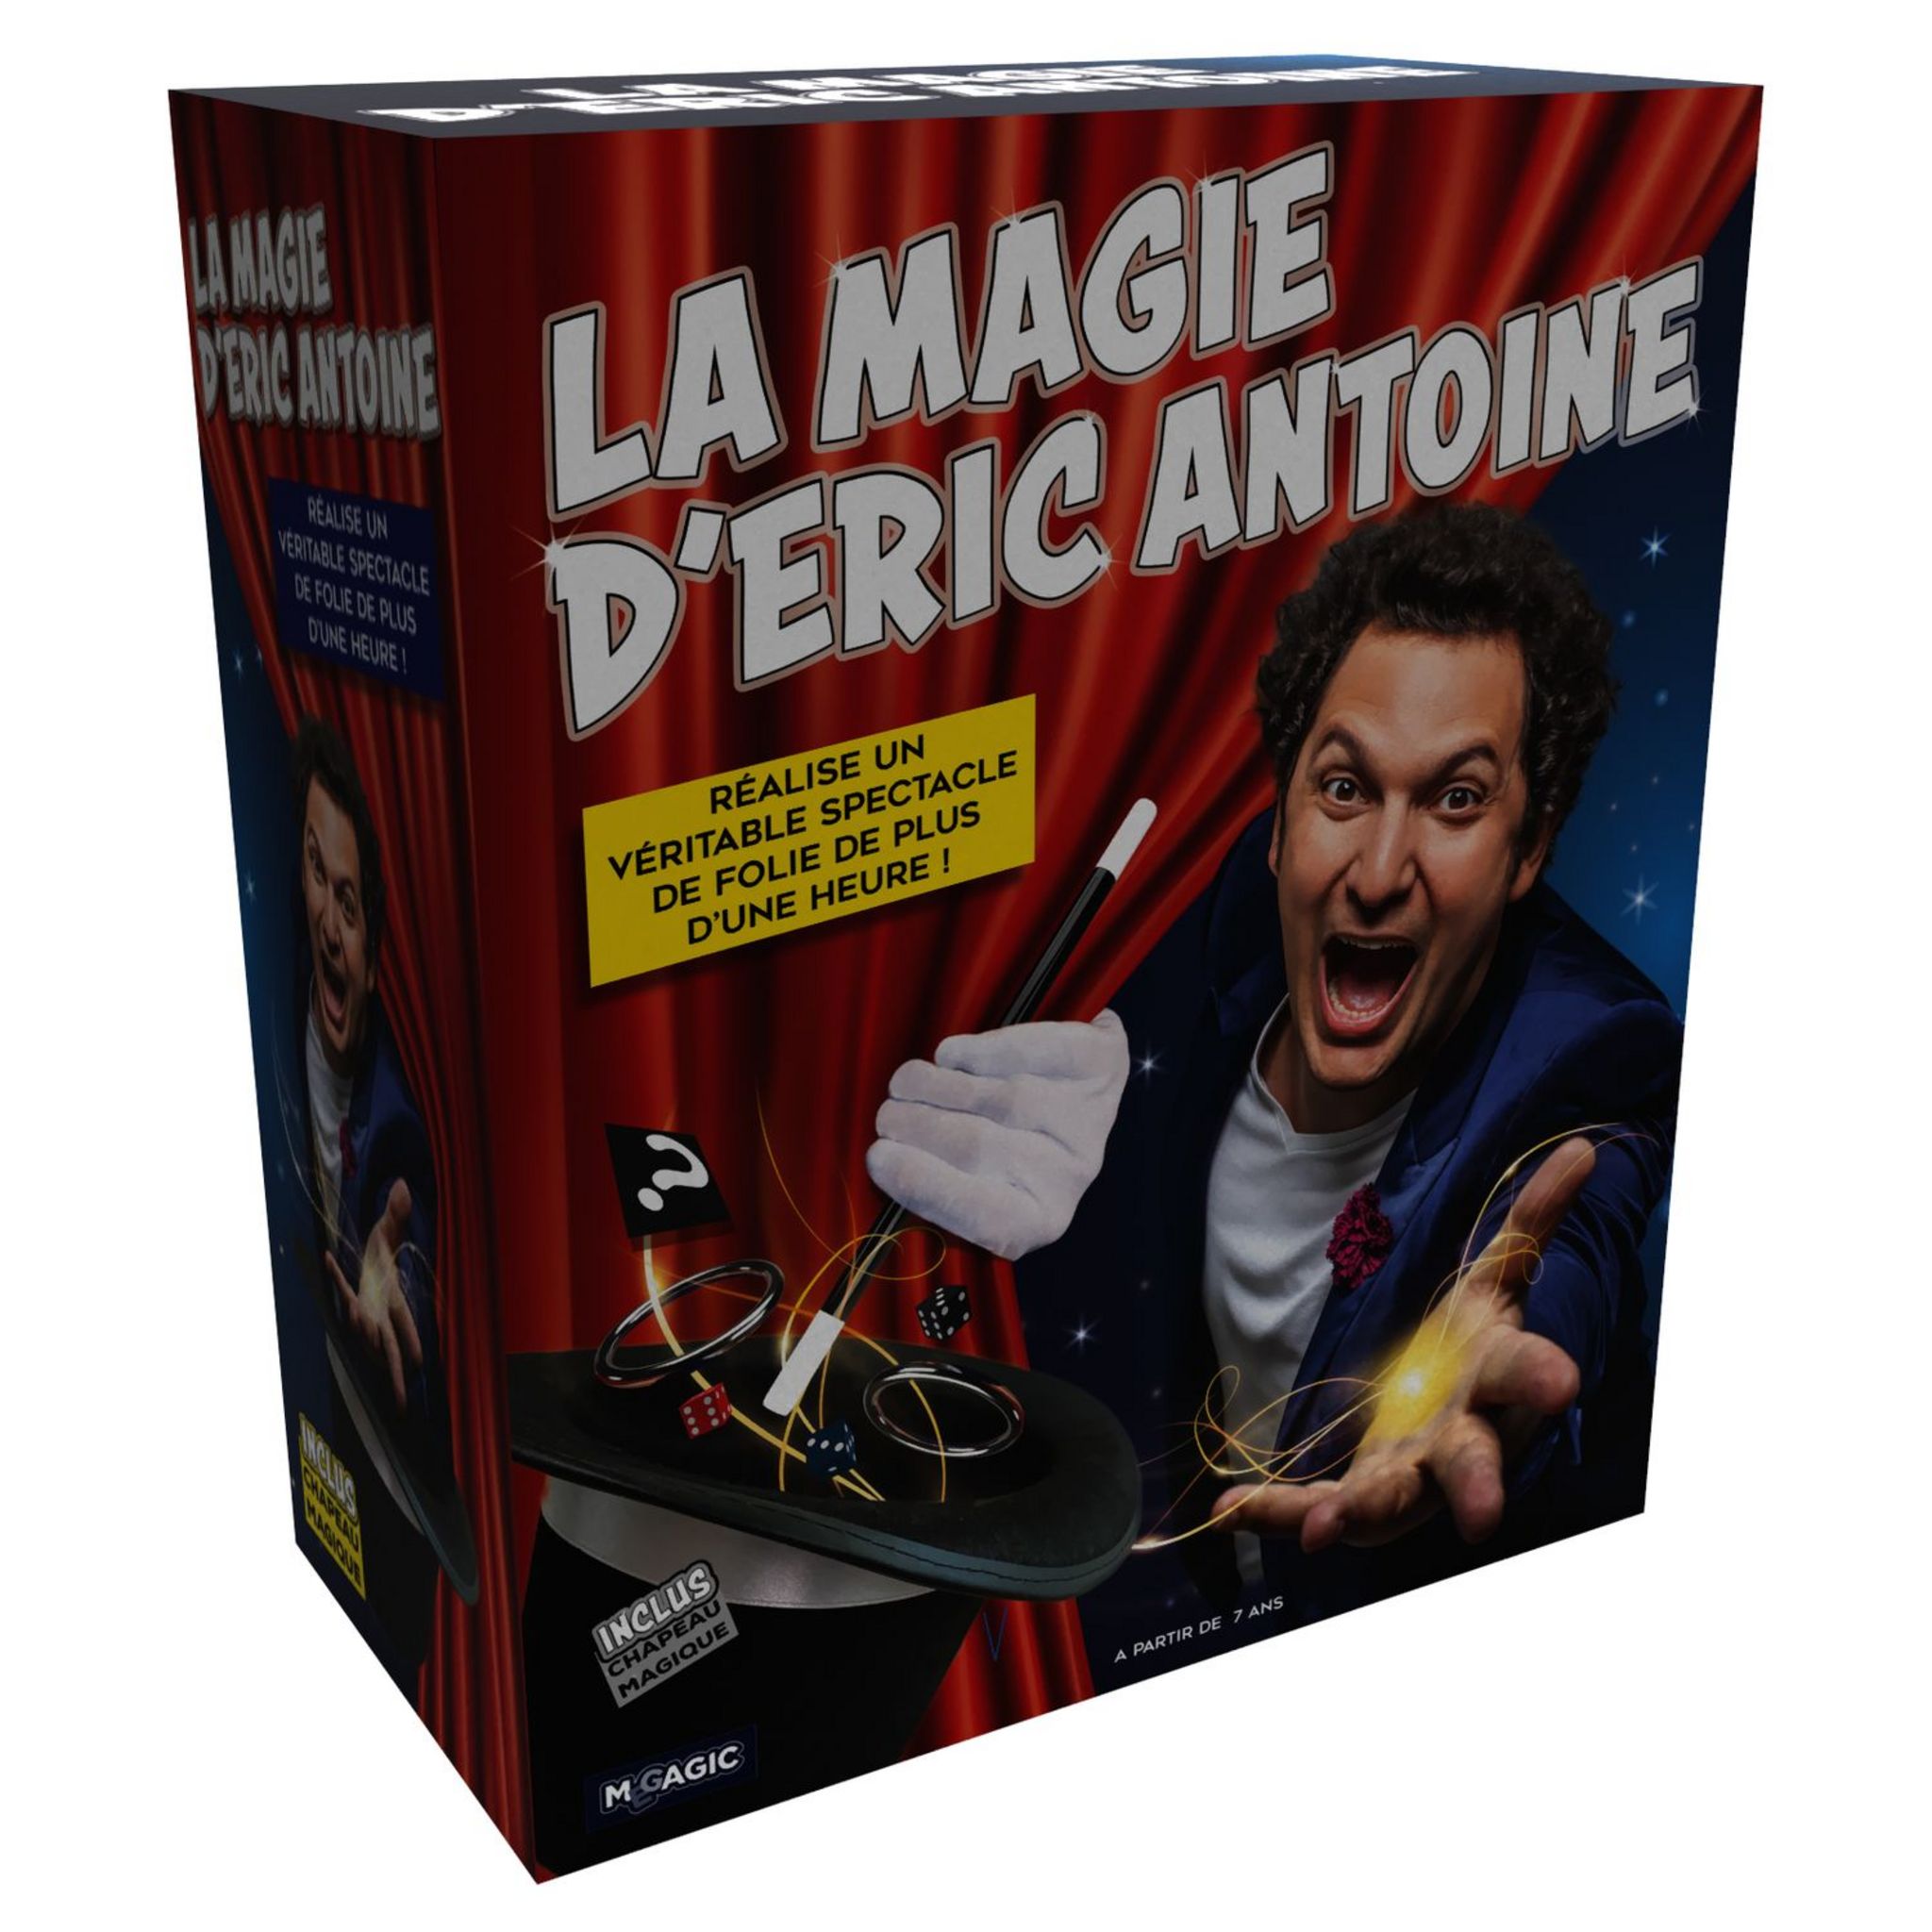 Megagic D'ERIC Coffret DE Magie Eric Antoine, EAC, Rouge, Centre